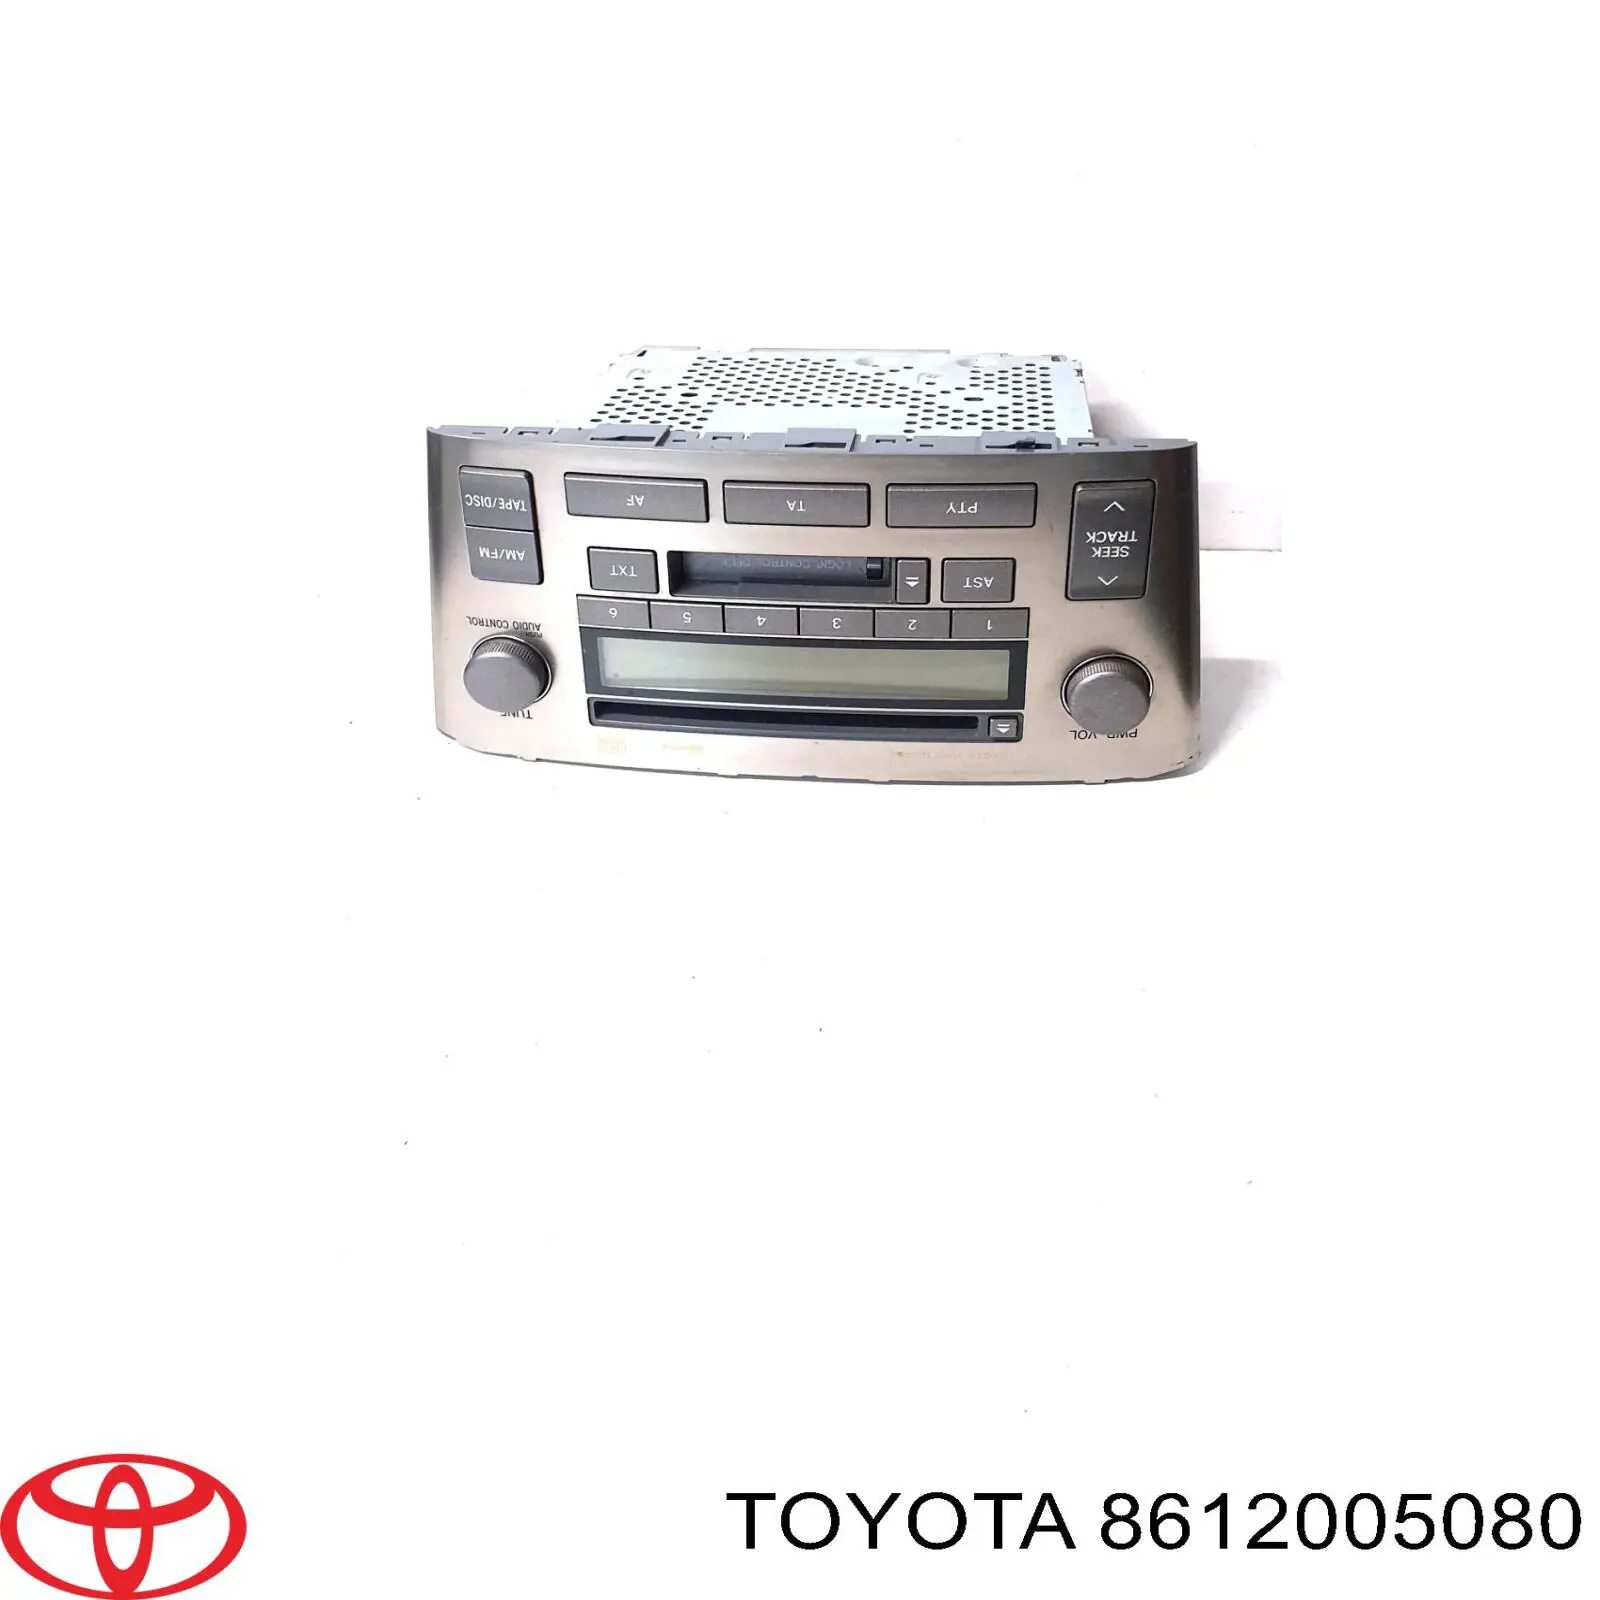 Aparelhagem de som (rádio AM/FM) para Toyota Avensis (T25)